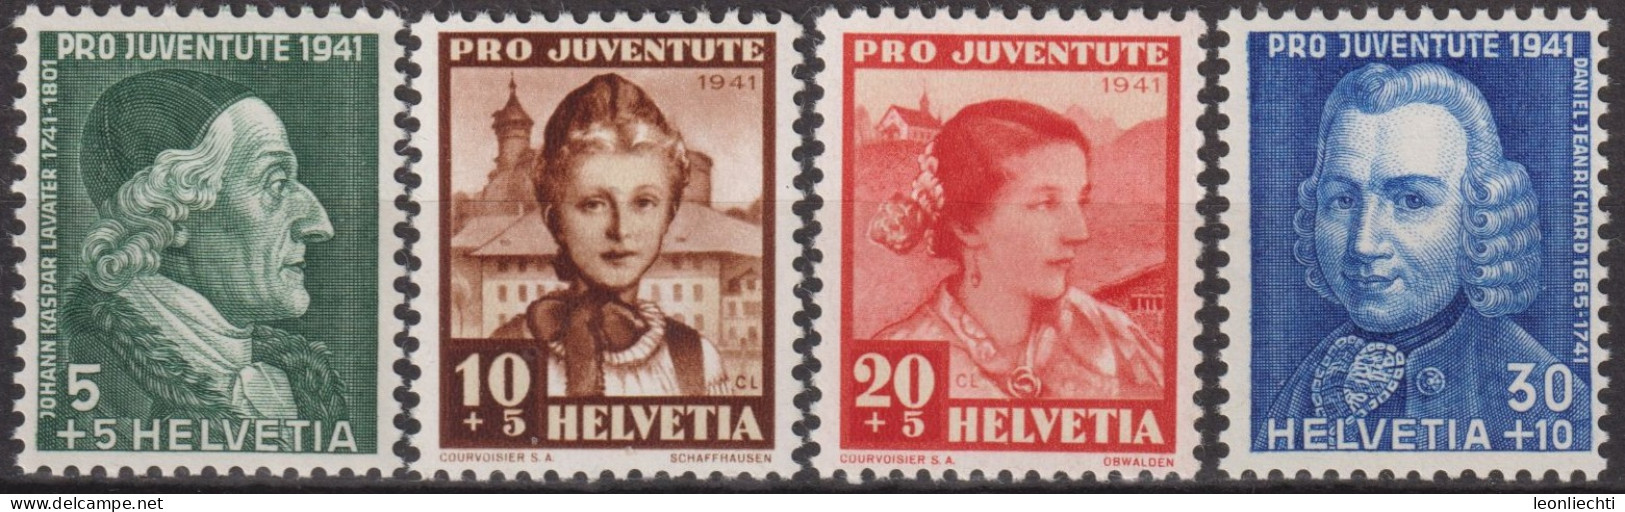 1941 Schweiz Pro Juventute ** Mi:CH 399-402 Yt:CH 371-374, Zum:CH J97-J100, Lavater+Jeanrichards+Trachtenfrauen - Neufs